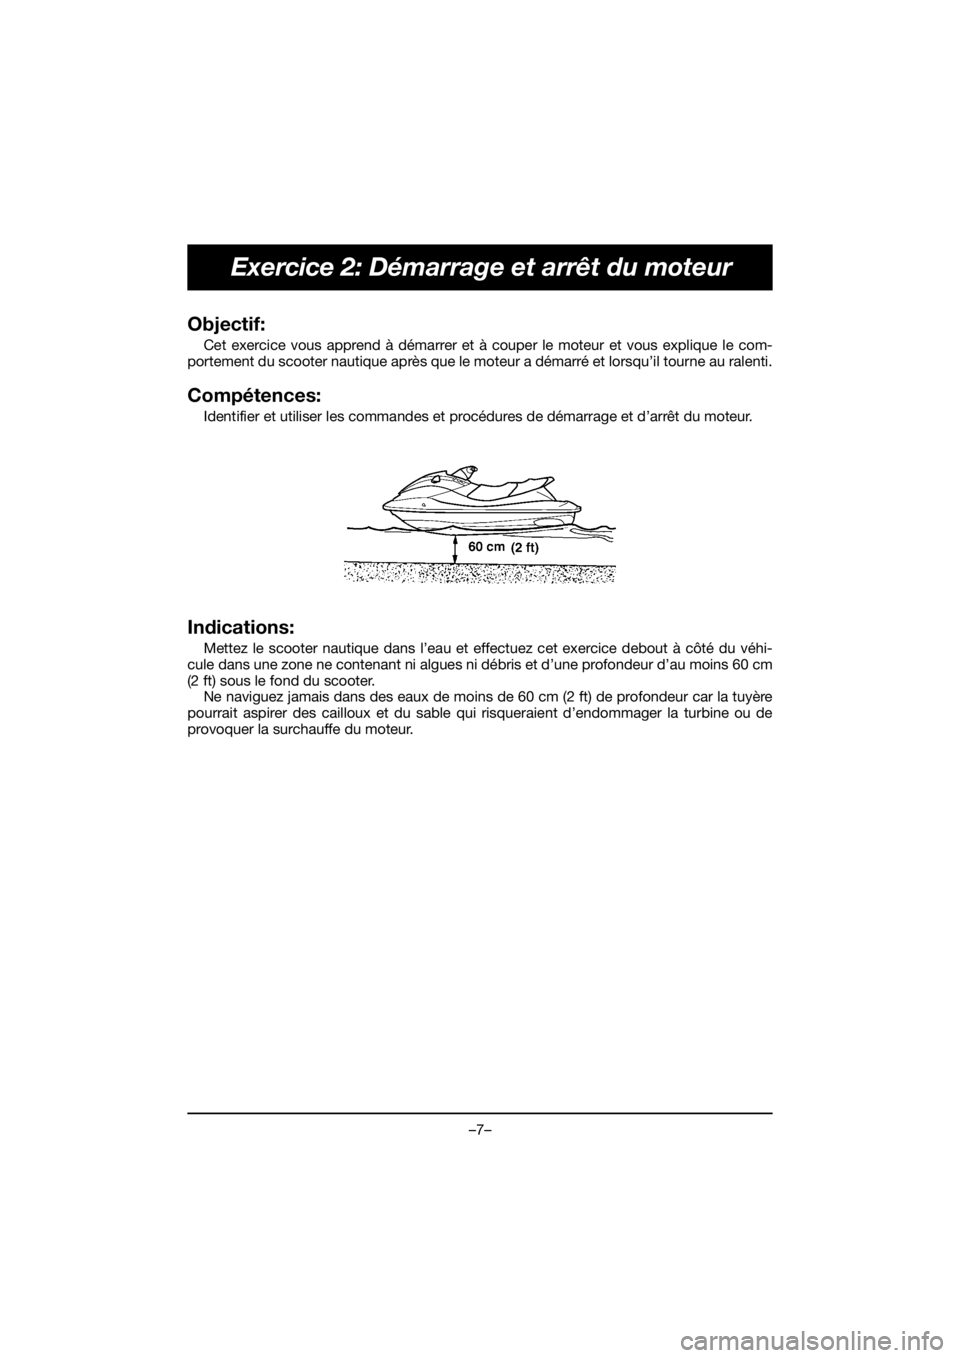 YAMAHA EX SPORT 2019  Manuale de Empleo (in Spanish) –7–
Exercice 2: Démarrage et arrêt du moteur
Objectif: 
Cet exercice vous apprend à démarrer et à couper le moteur et vous explique le com-
portement du scooter nautique après que le moteur 